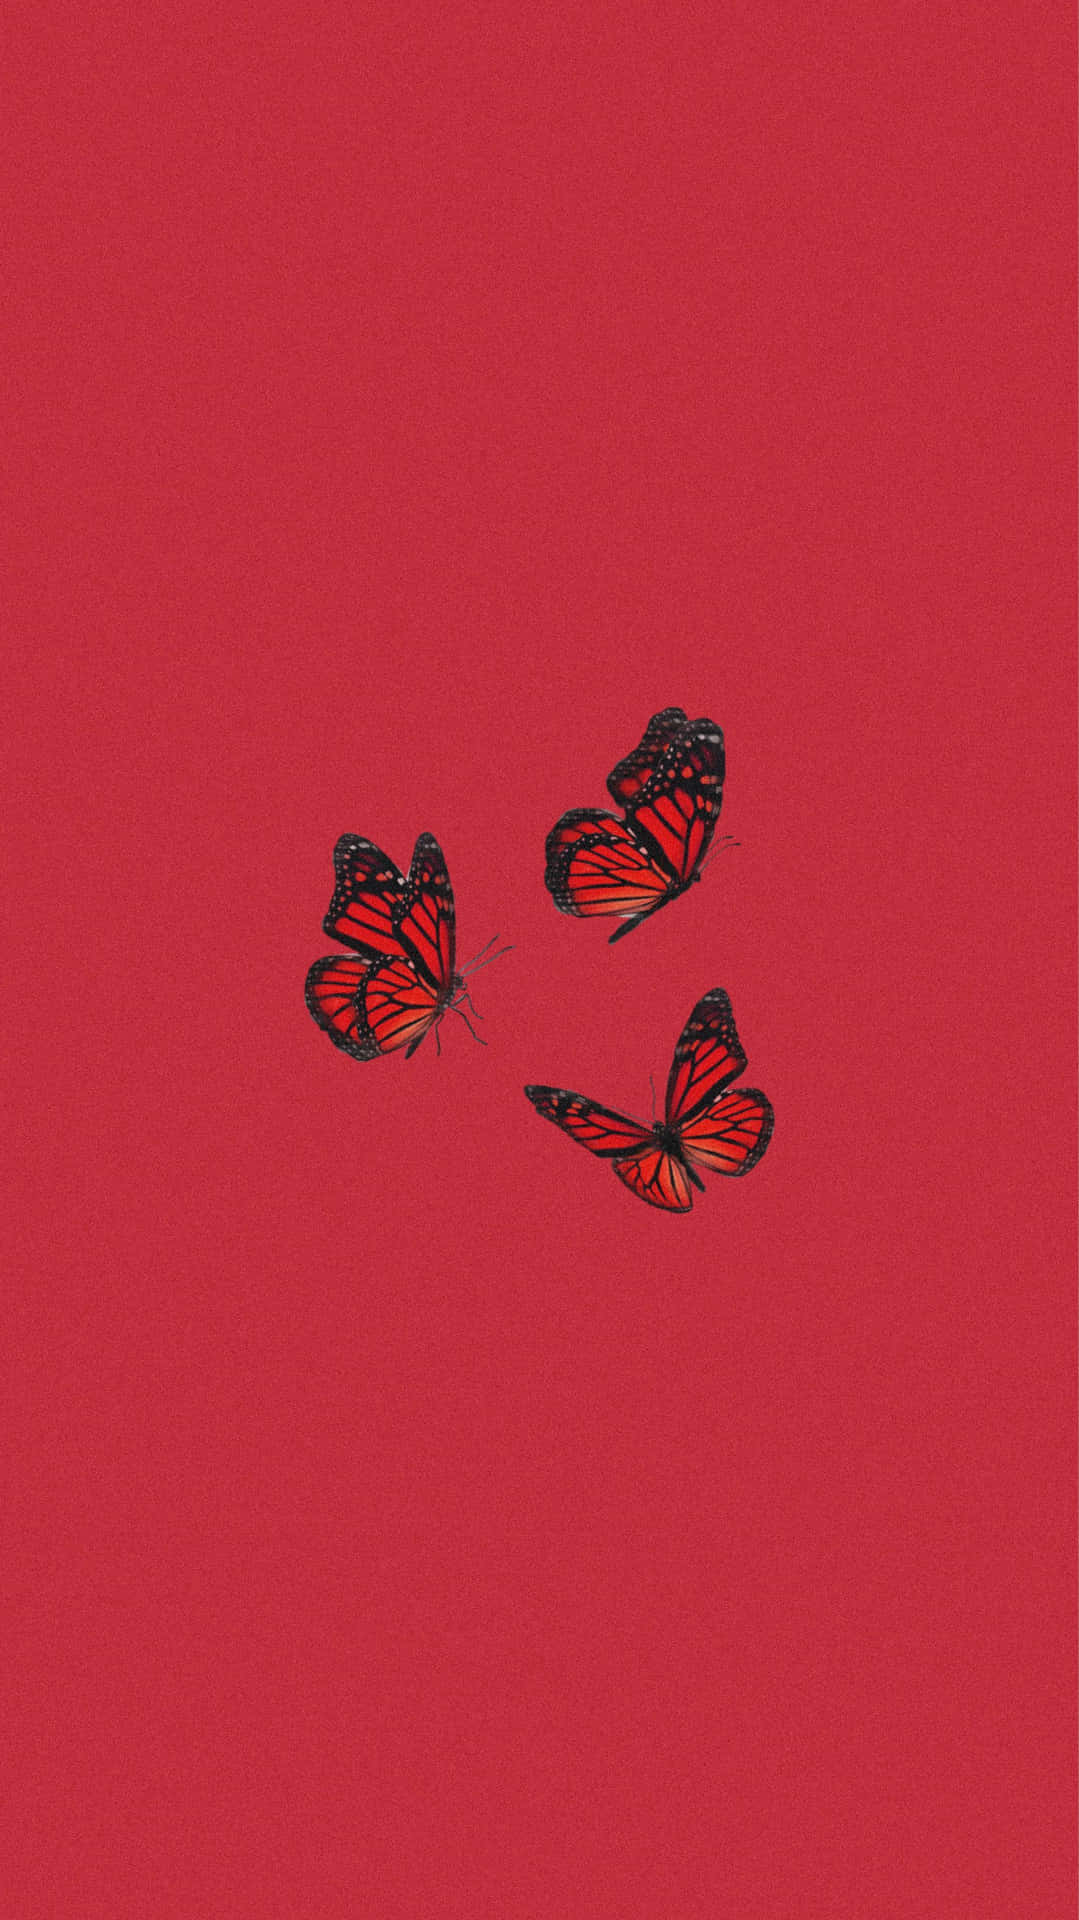 Dieflügel Eines Roten Schmetterlings Breiten Sich In Einem Wunderschönen Muster Aus. Wallpaper